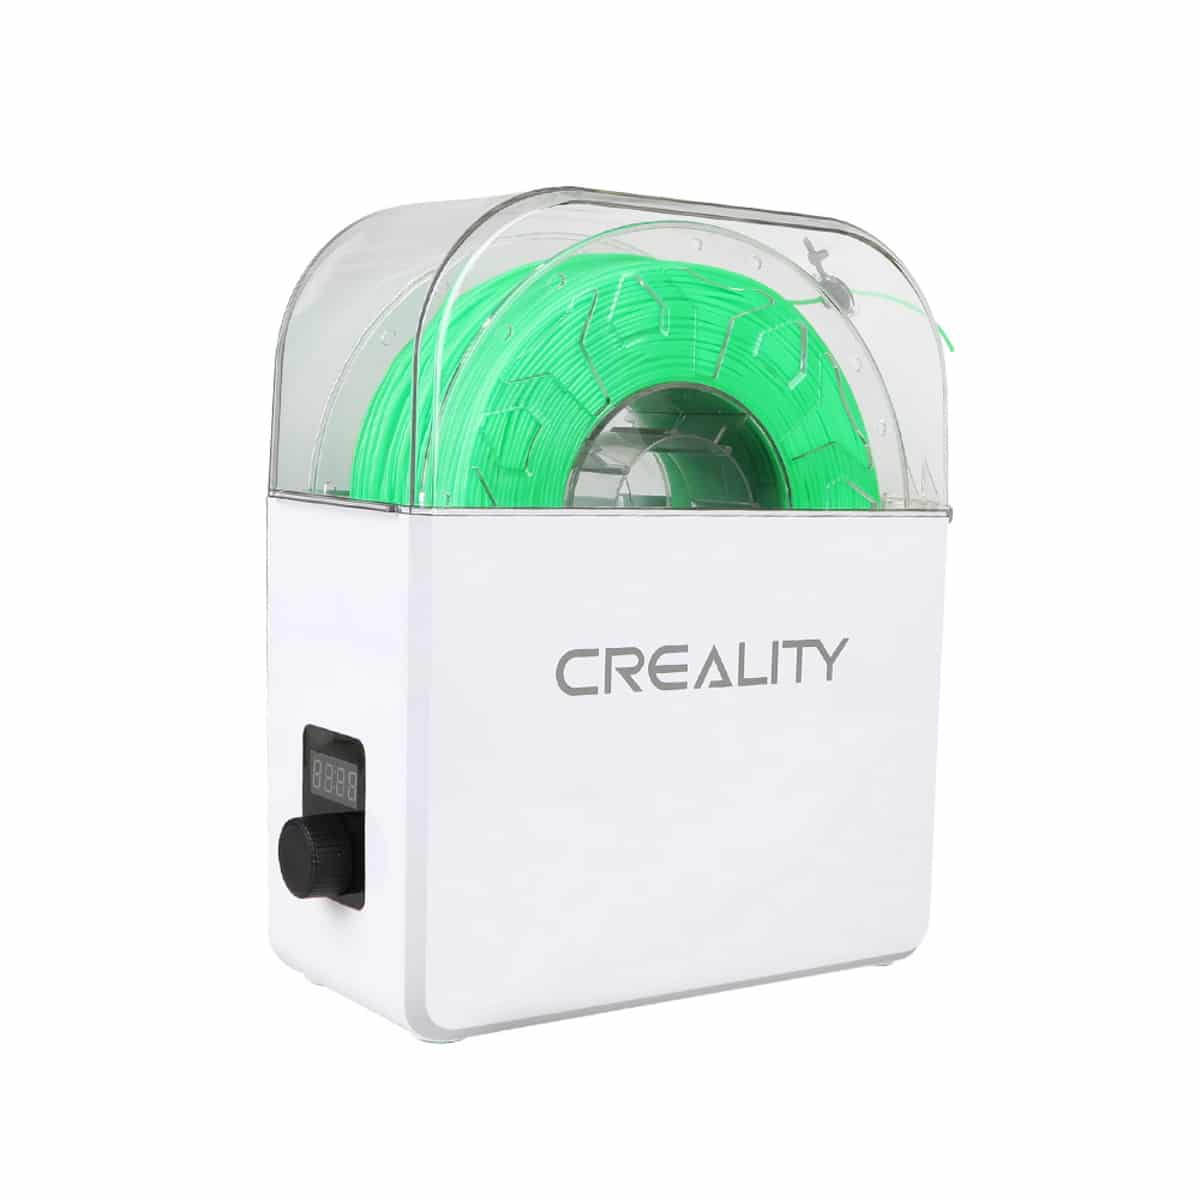 Køb Creality Filament Dry Box 3d printer - Pris 379.00 kr.